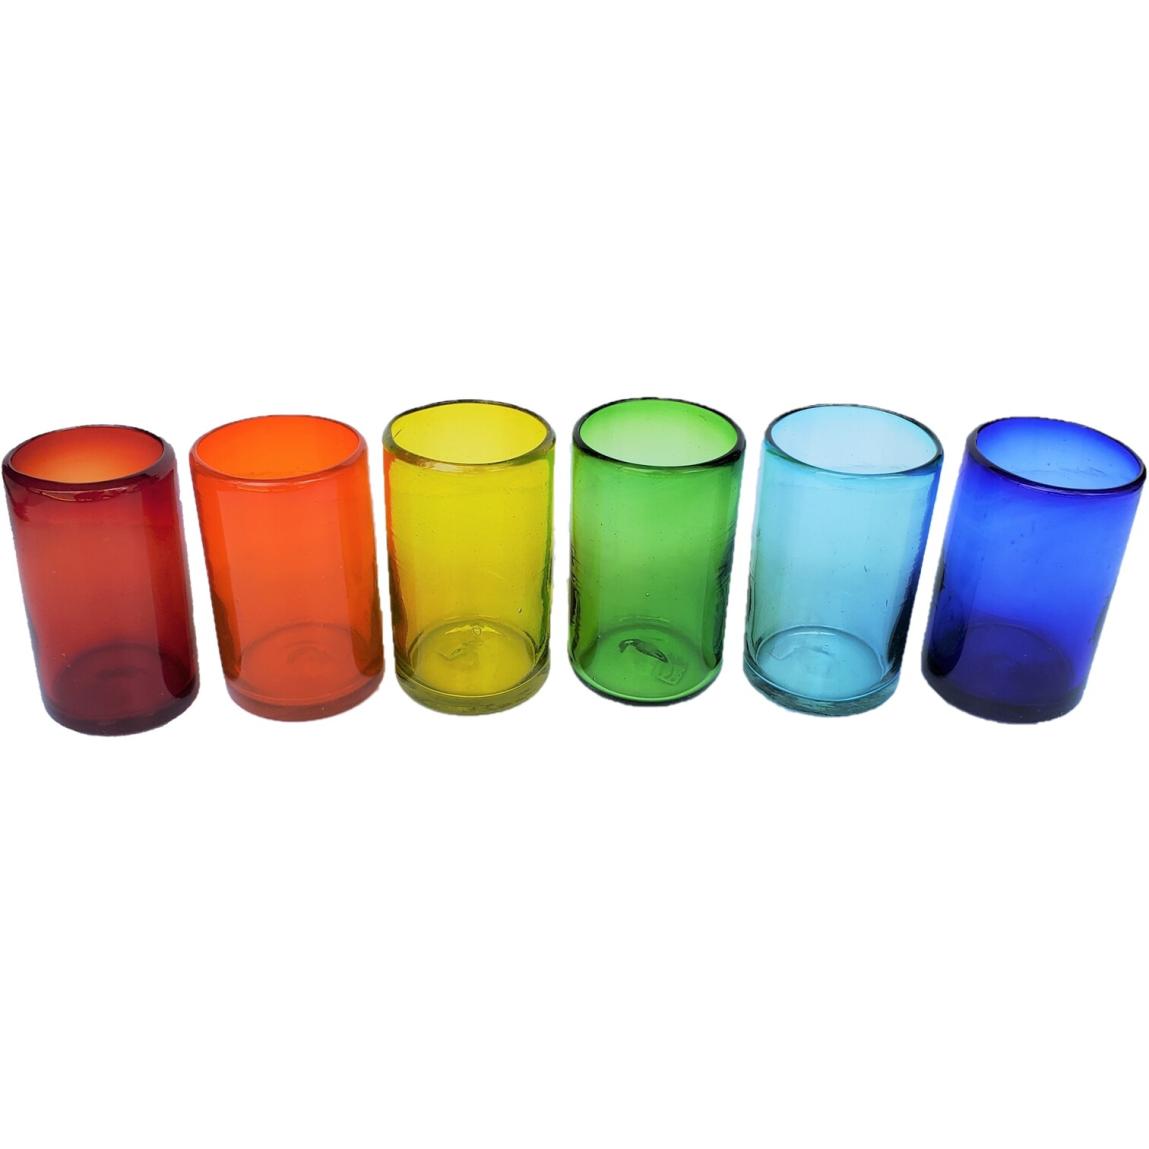 Colores Solidos / Juego de 6 vasos grandes de colores Arcoris / stos artesanales vasos le darn un toque clsico a su bebida favorita.